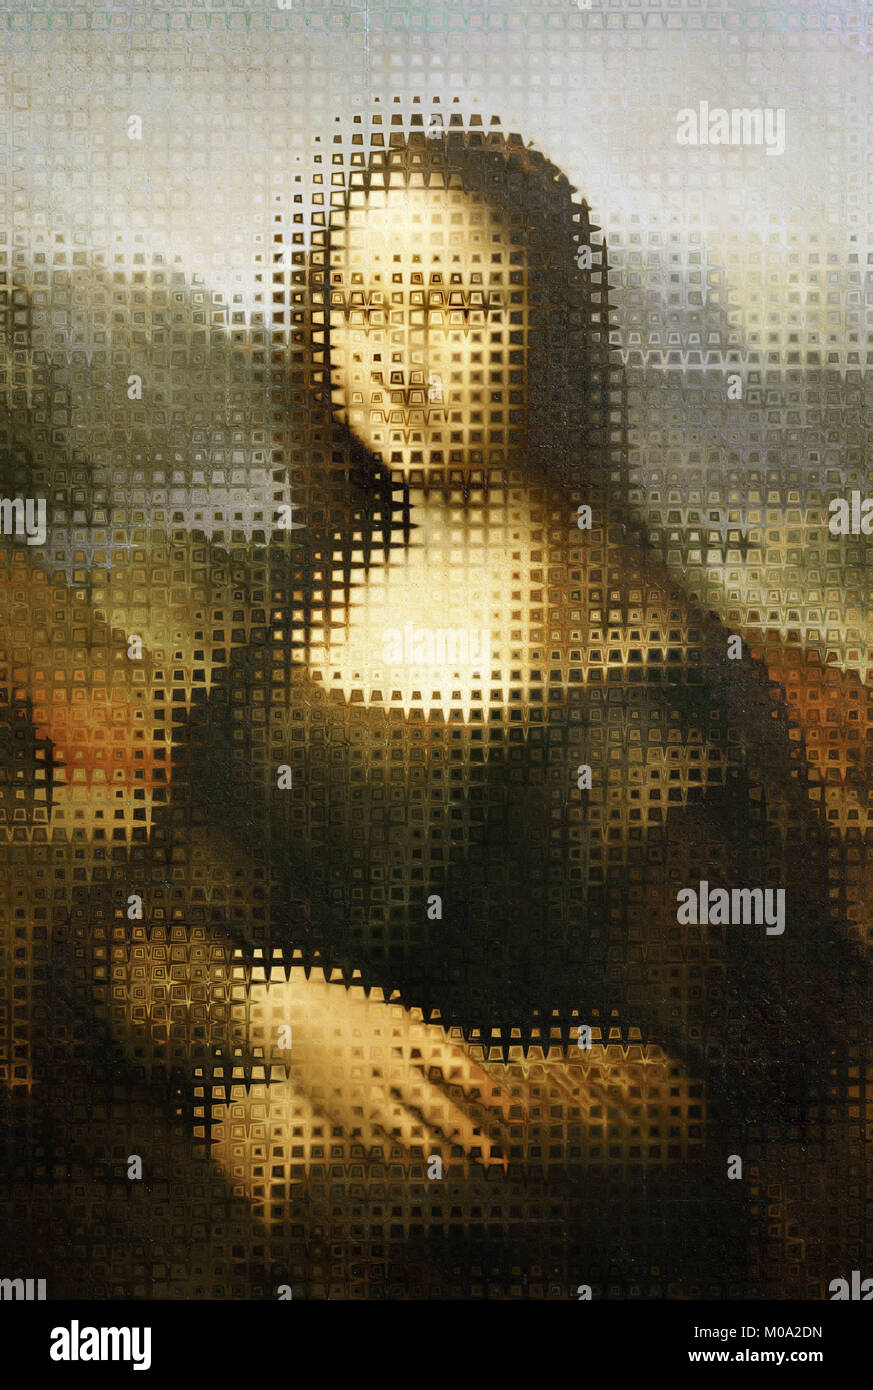 Modificación artística del famoso retrato de Mona Lisa de Leonardo da Vinci Foto de stock